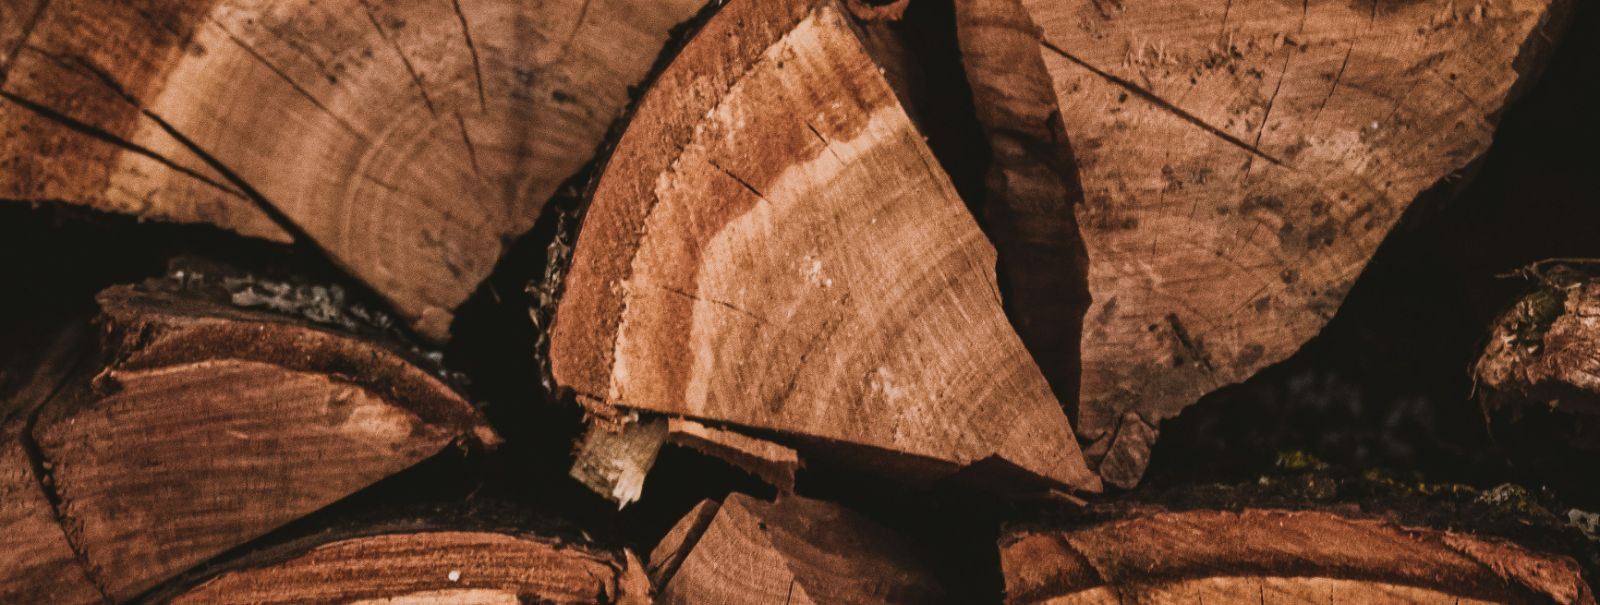 Jätkusuutlik küttepuu viitab puidule, mida on korjatud ja töödeldud viisil, mis säilitab metsade tervise ja bioloogilise mitmekesisuse, pakkudes samal ajal taas